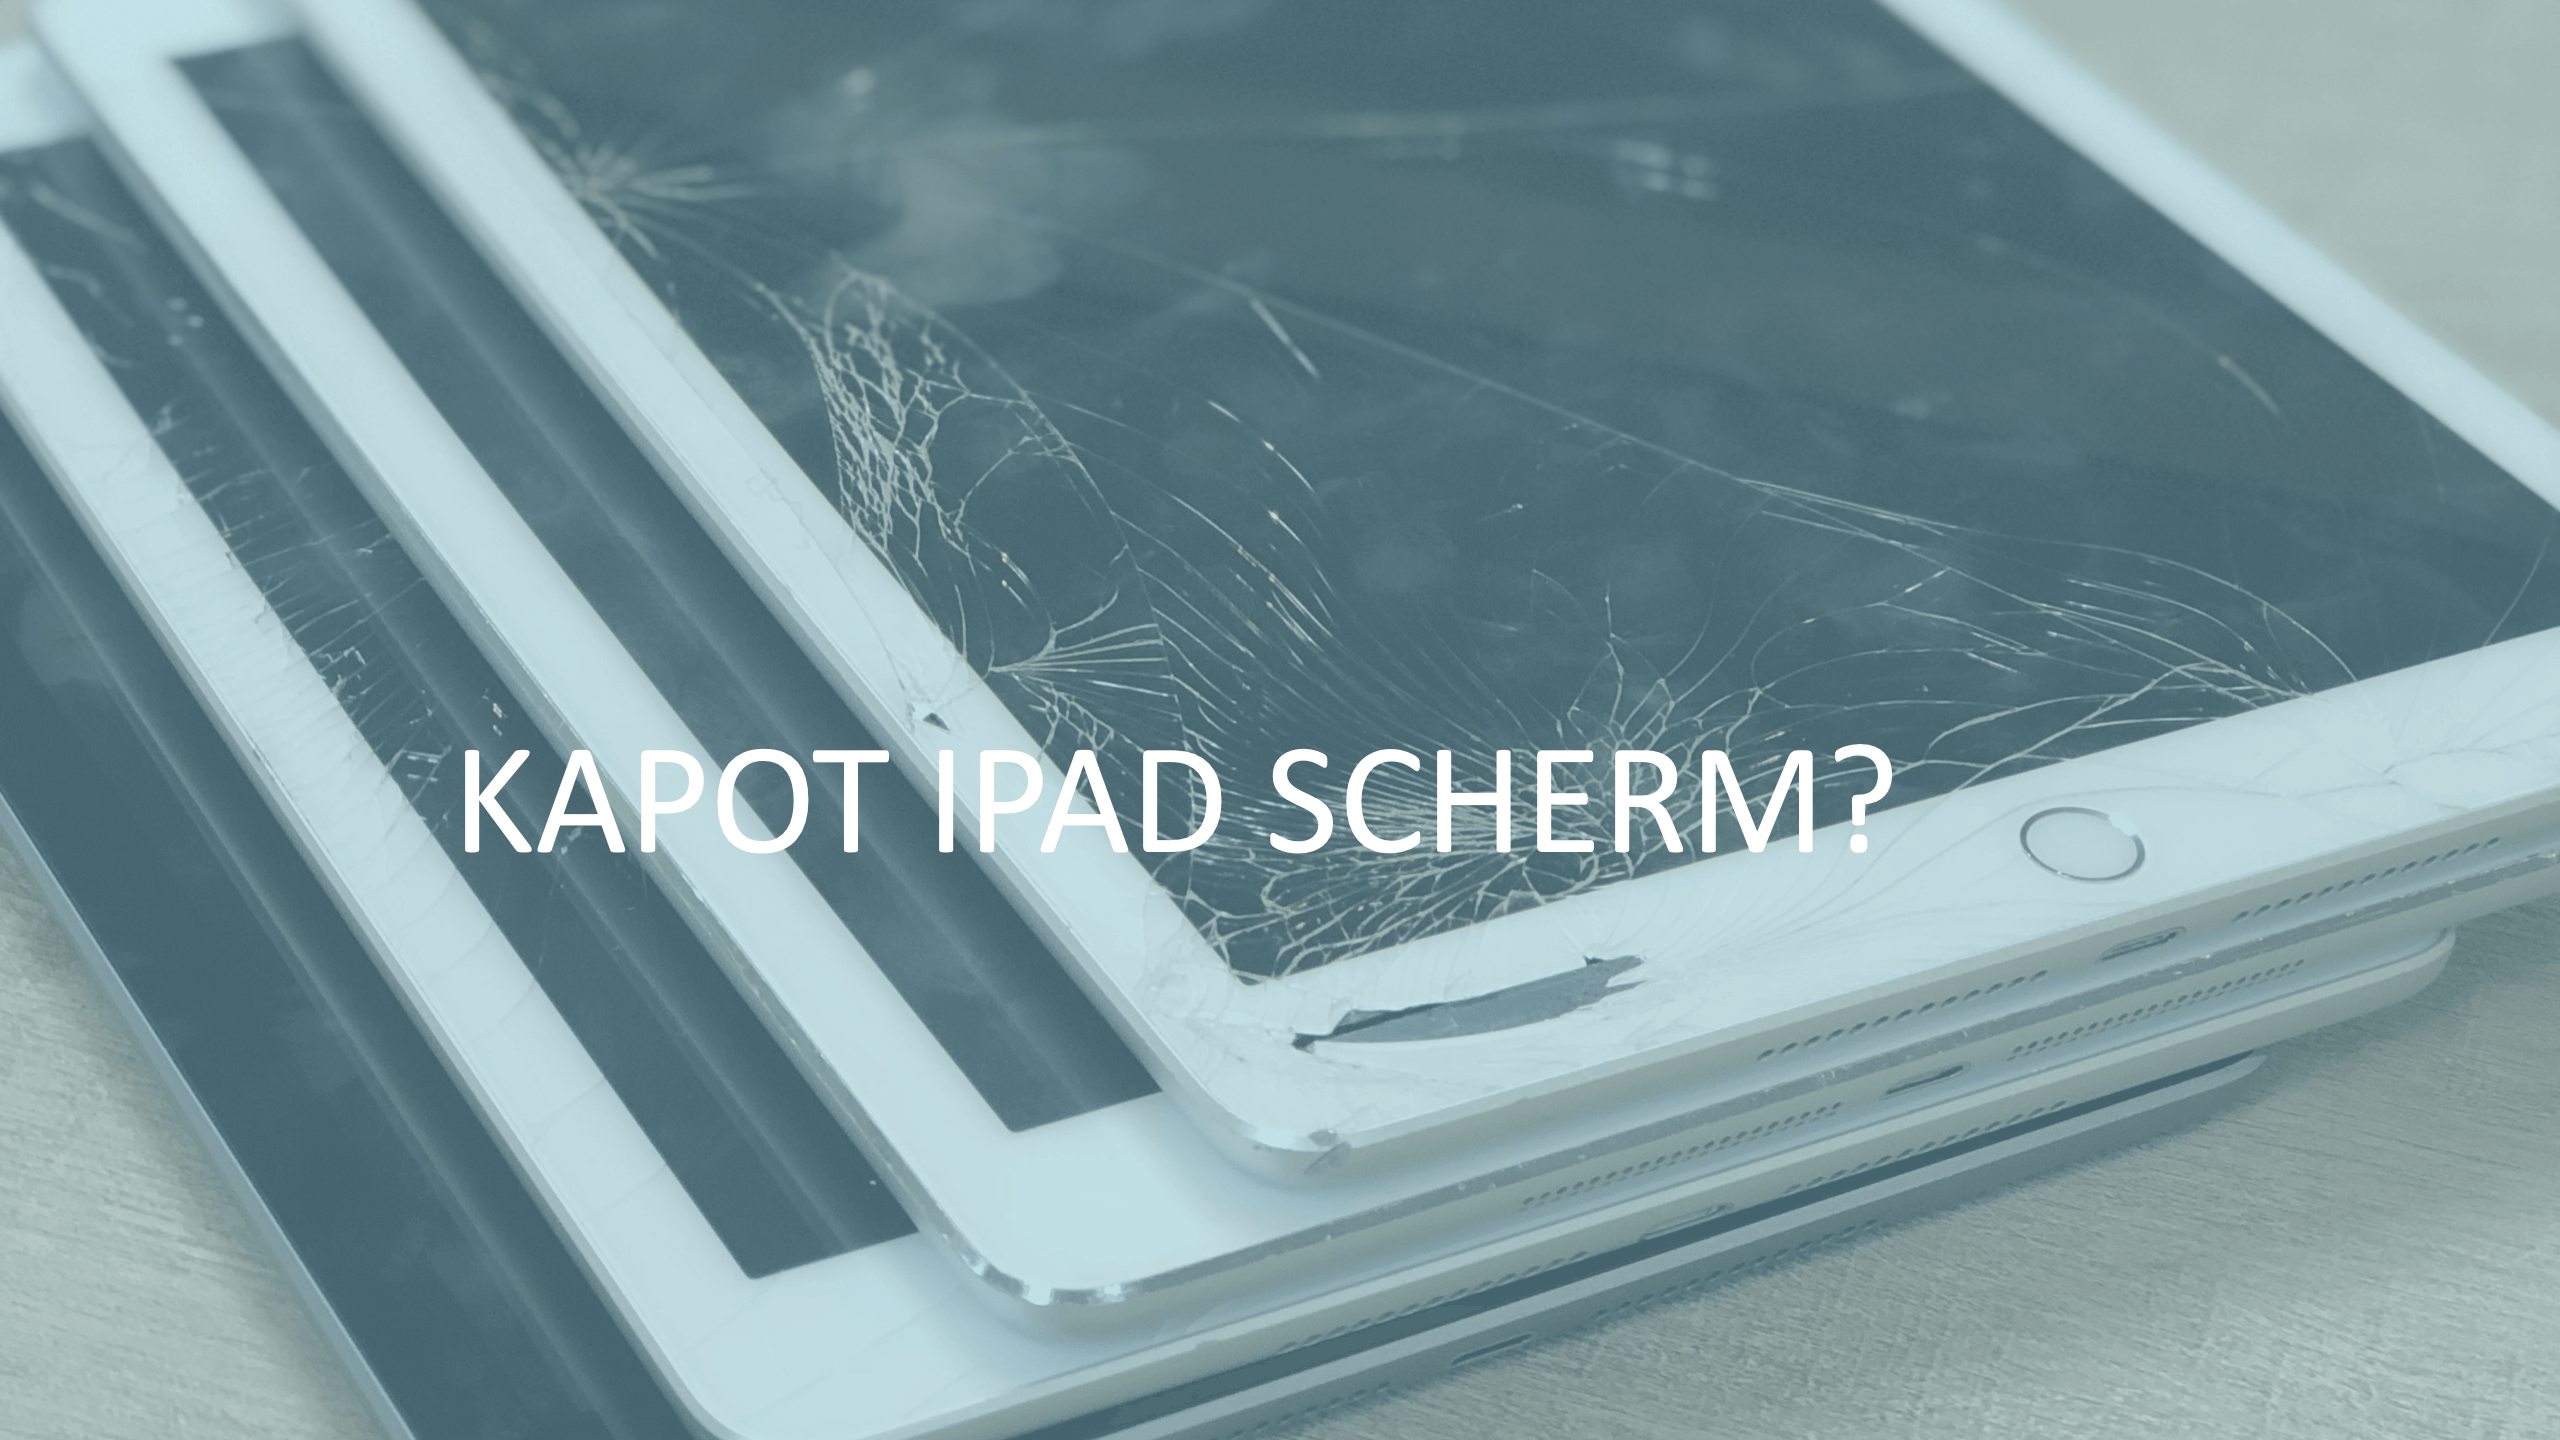 iPad scherm kapot, wat nu? Scherm reparatie < 24 uur - Repair IT